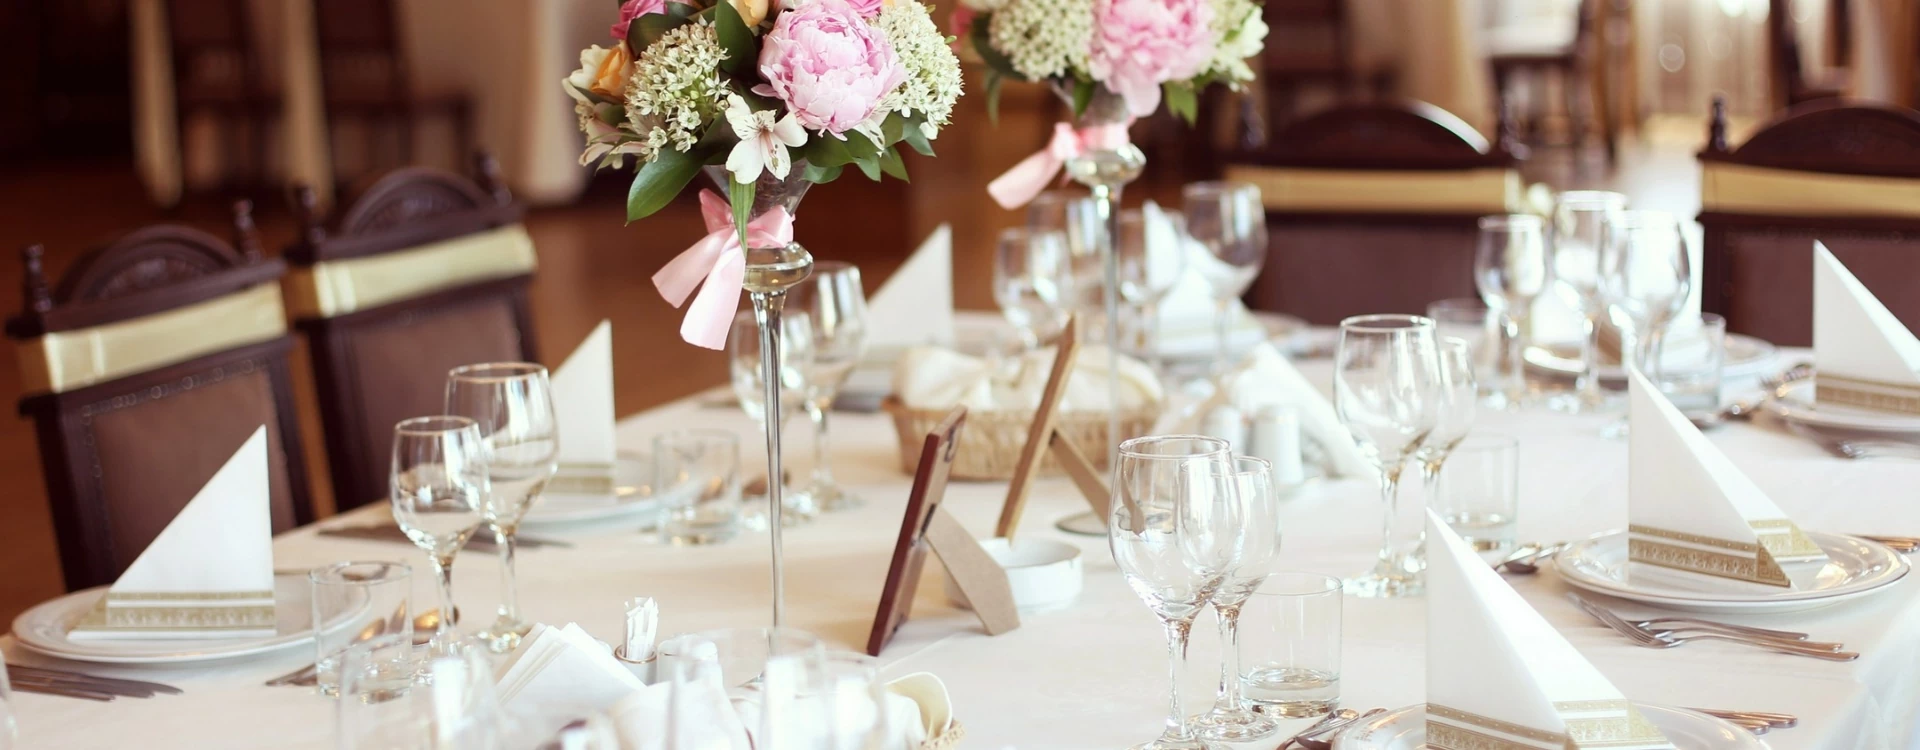 Stół dla gości weselnych